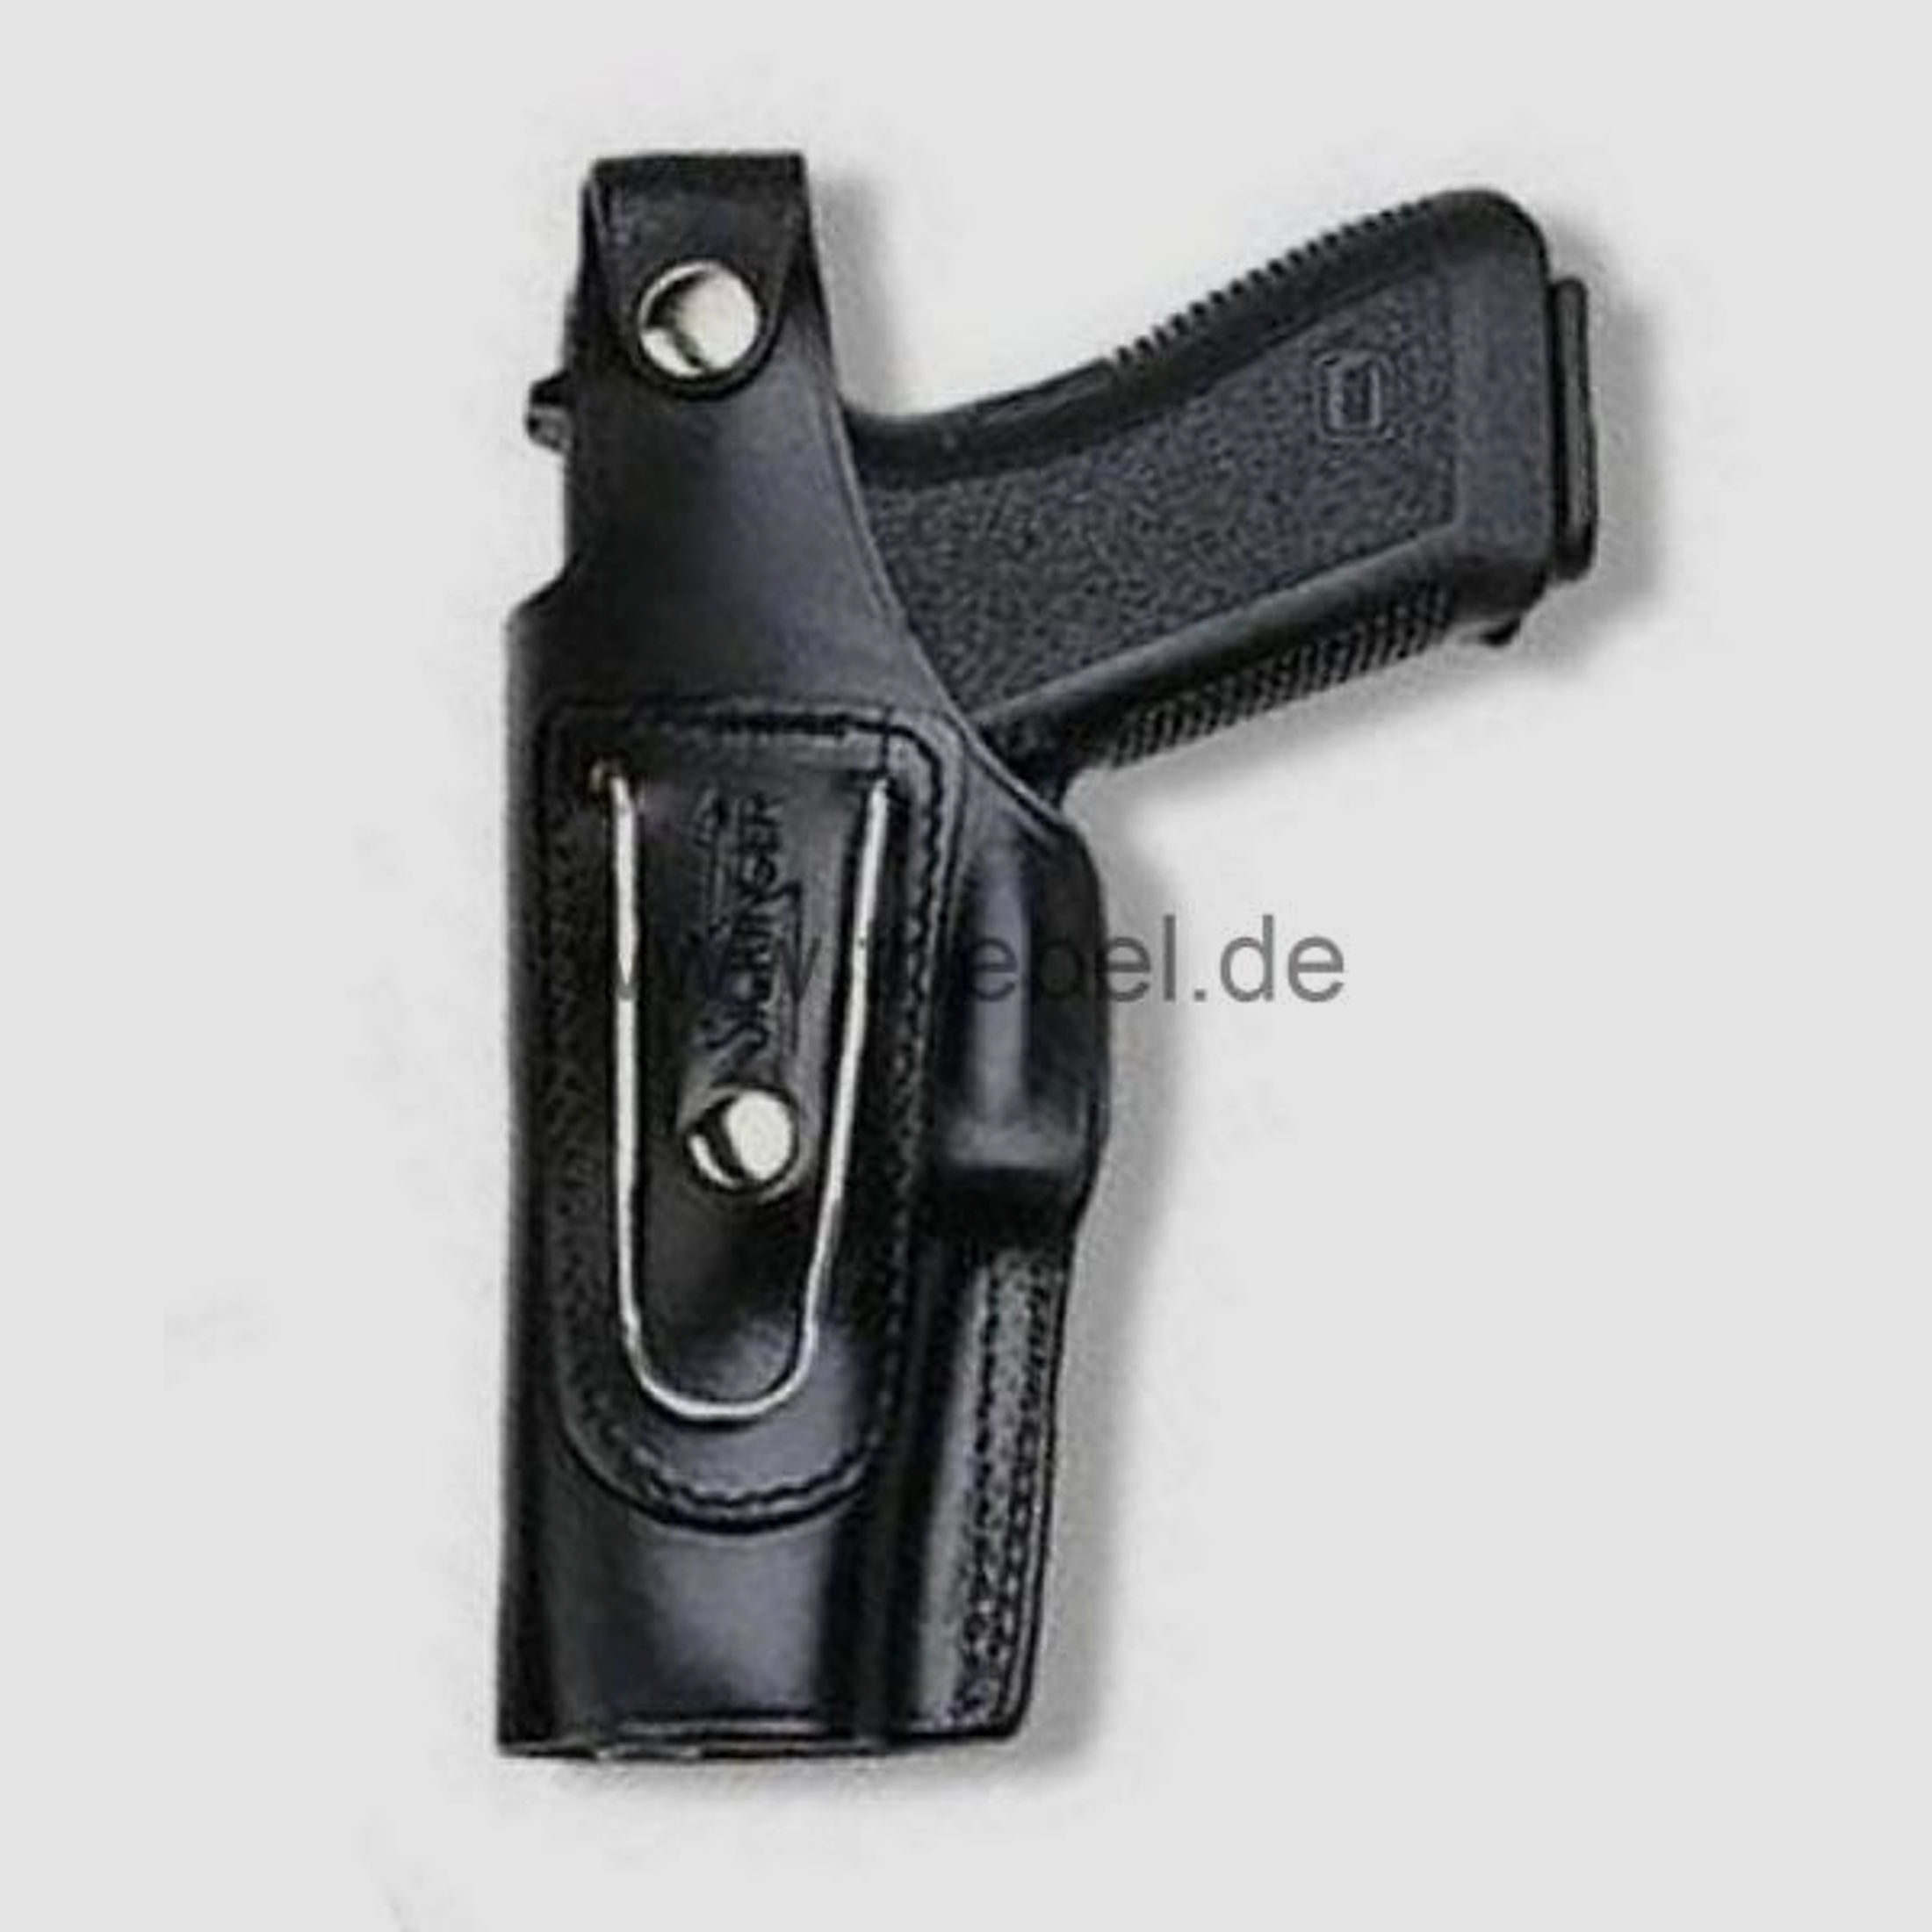 SICKINGER Holster (Leder) f. Glock 26/27/28/33/39 62353  -G-Man schwarz